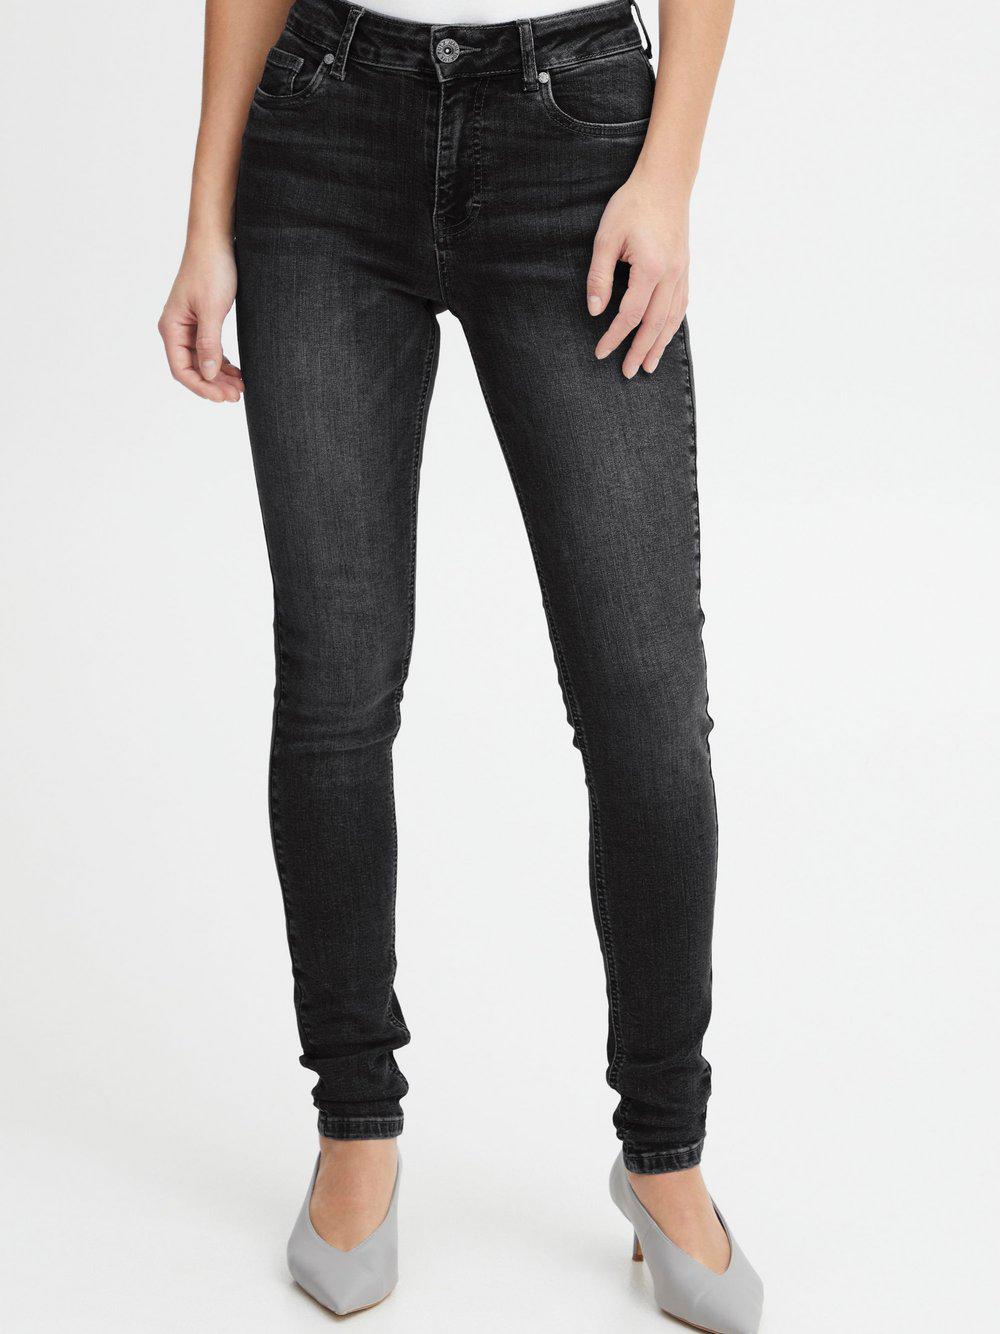 PULZ Jeans 5-Pocket-Jeans Damen Baumwolle, schwarz von Pulz Jeans